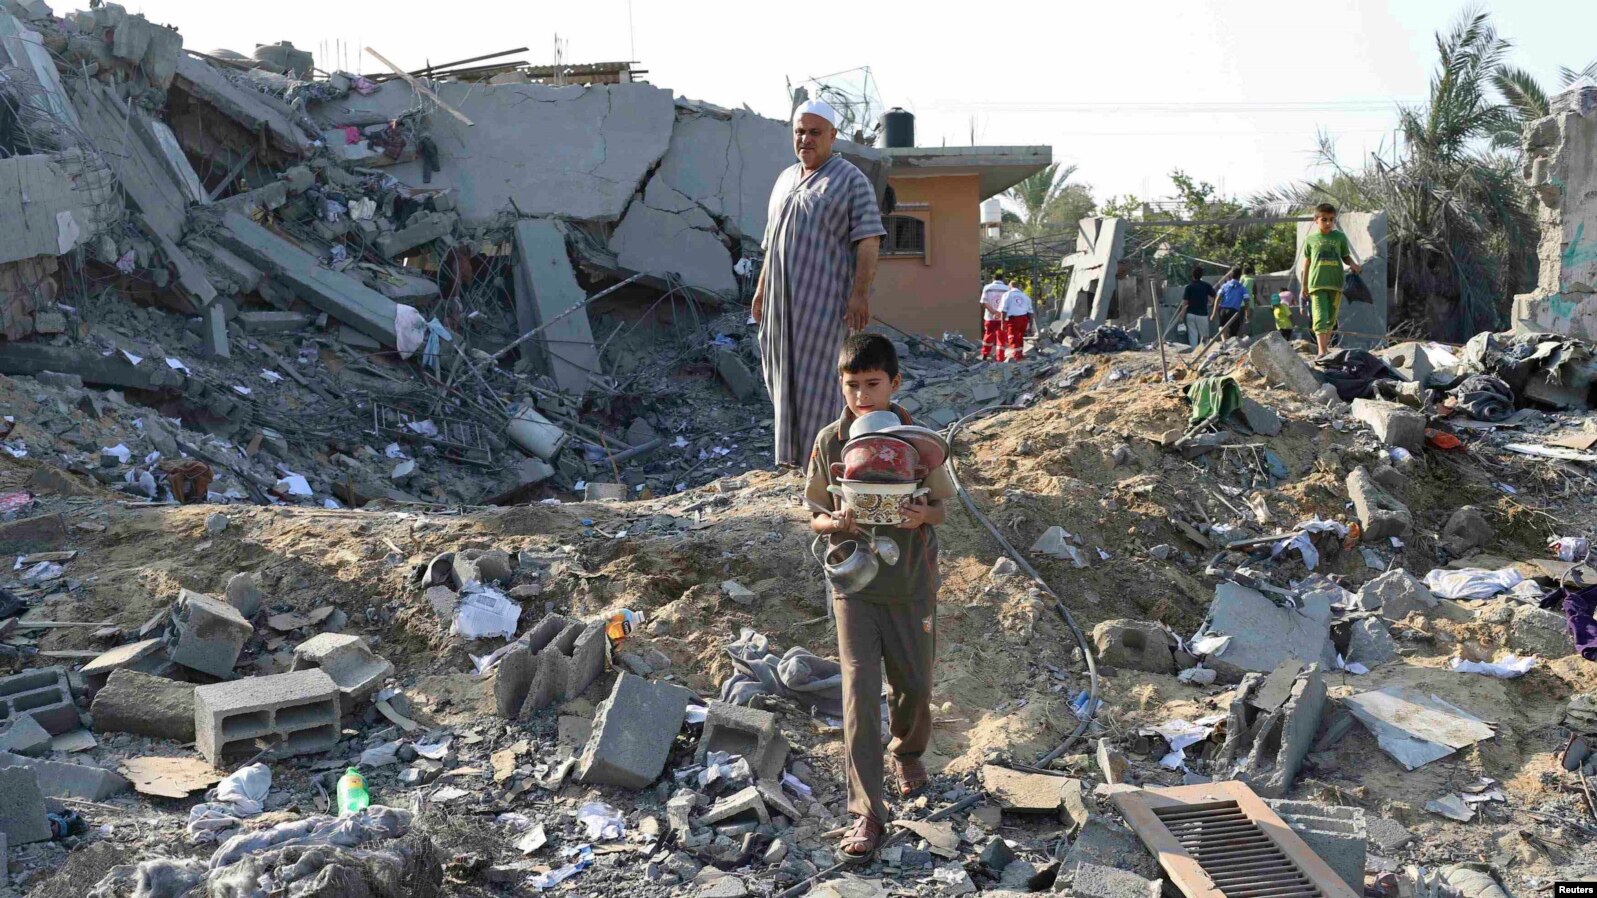 Prizor nakon izraelskog vazdušnog napada na Gazu, juli 2014.